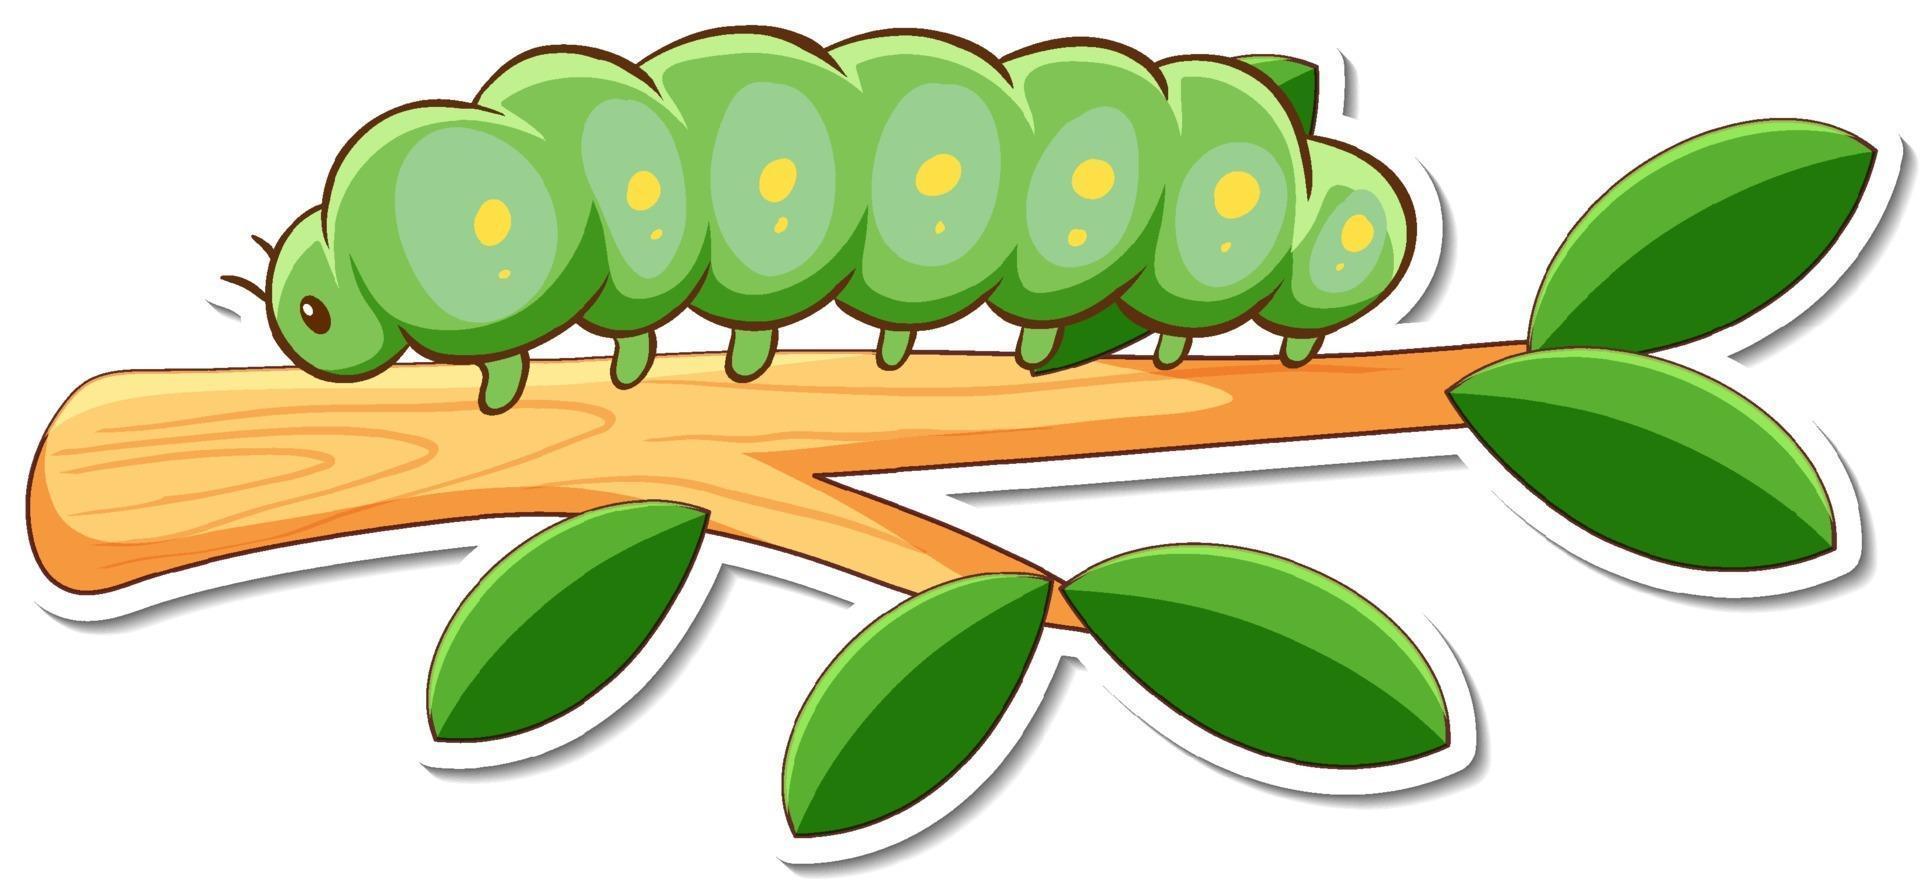 personaje de dibujos animados de gusano verde en una etiqueta de rama  3223022 Vector en Vecteezy